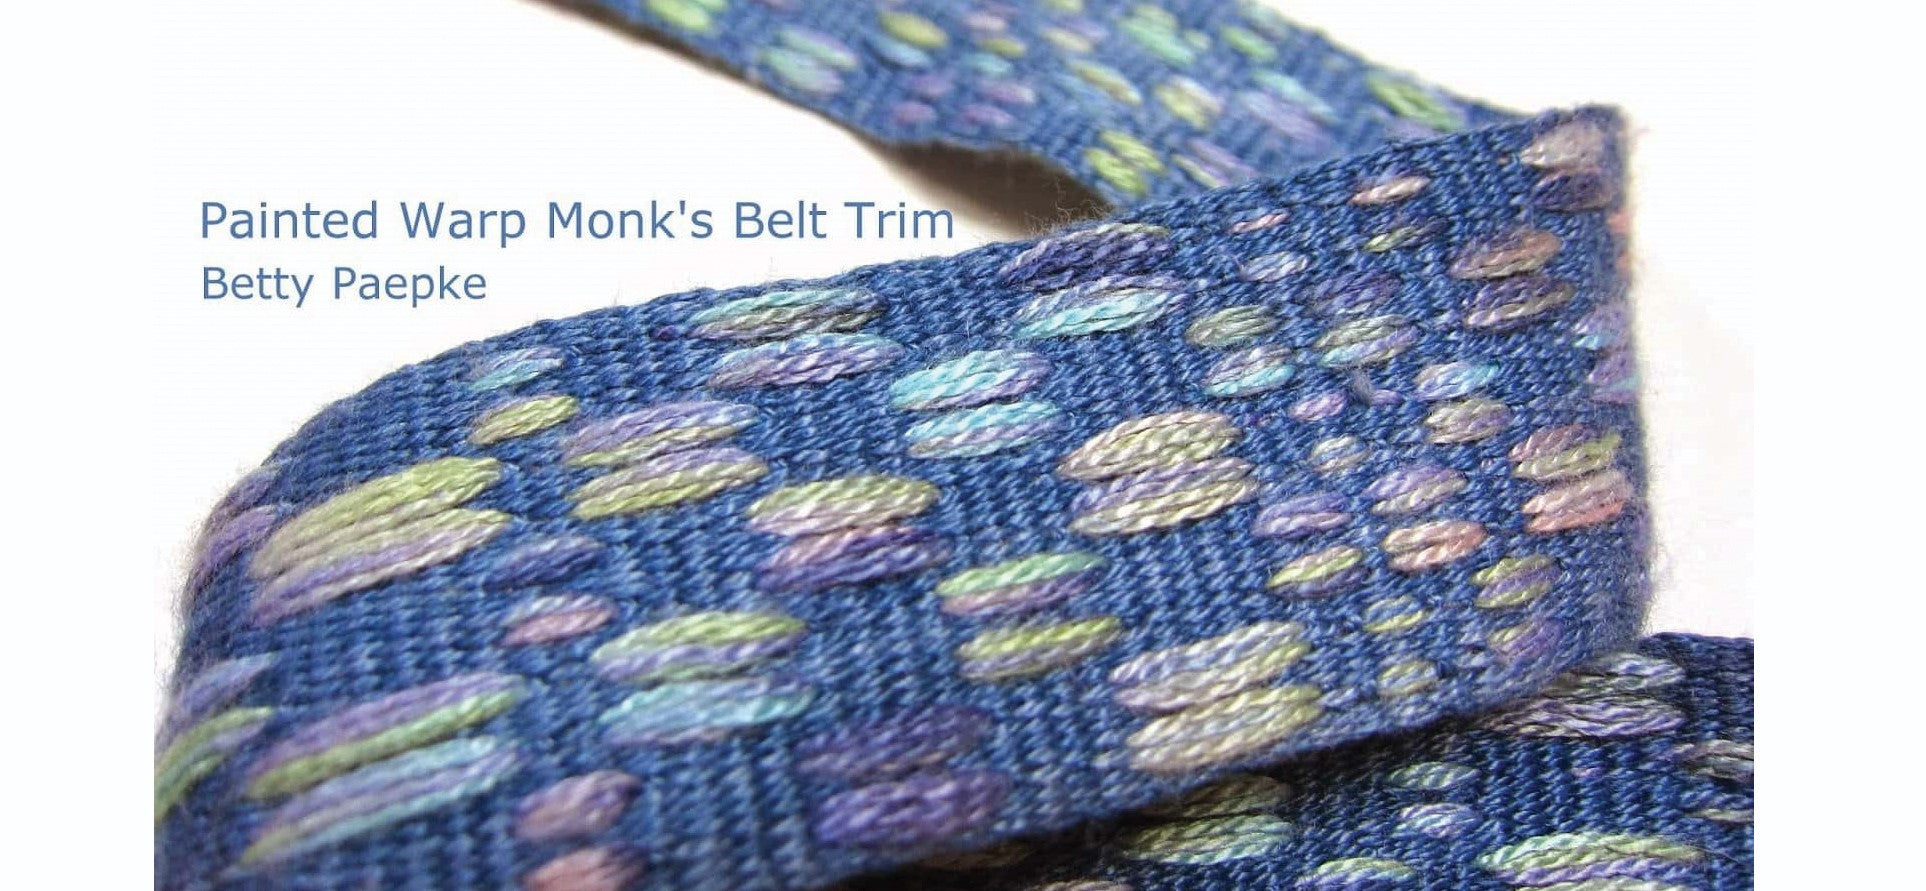 Painted Warp Monk's Belt Trim